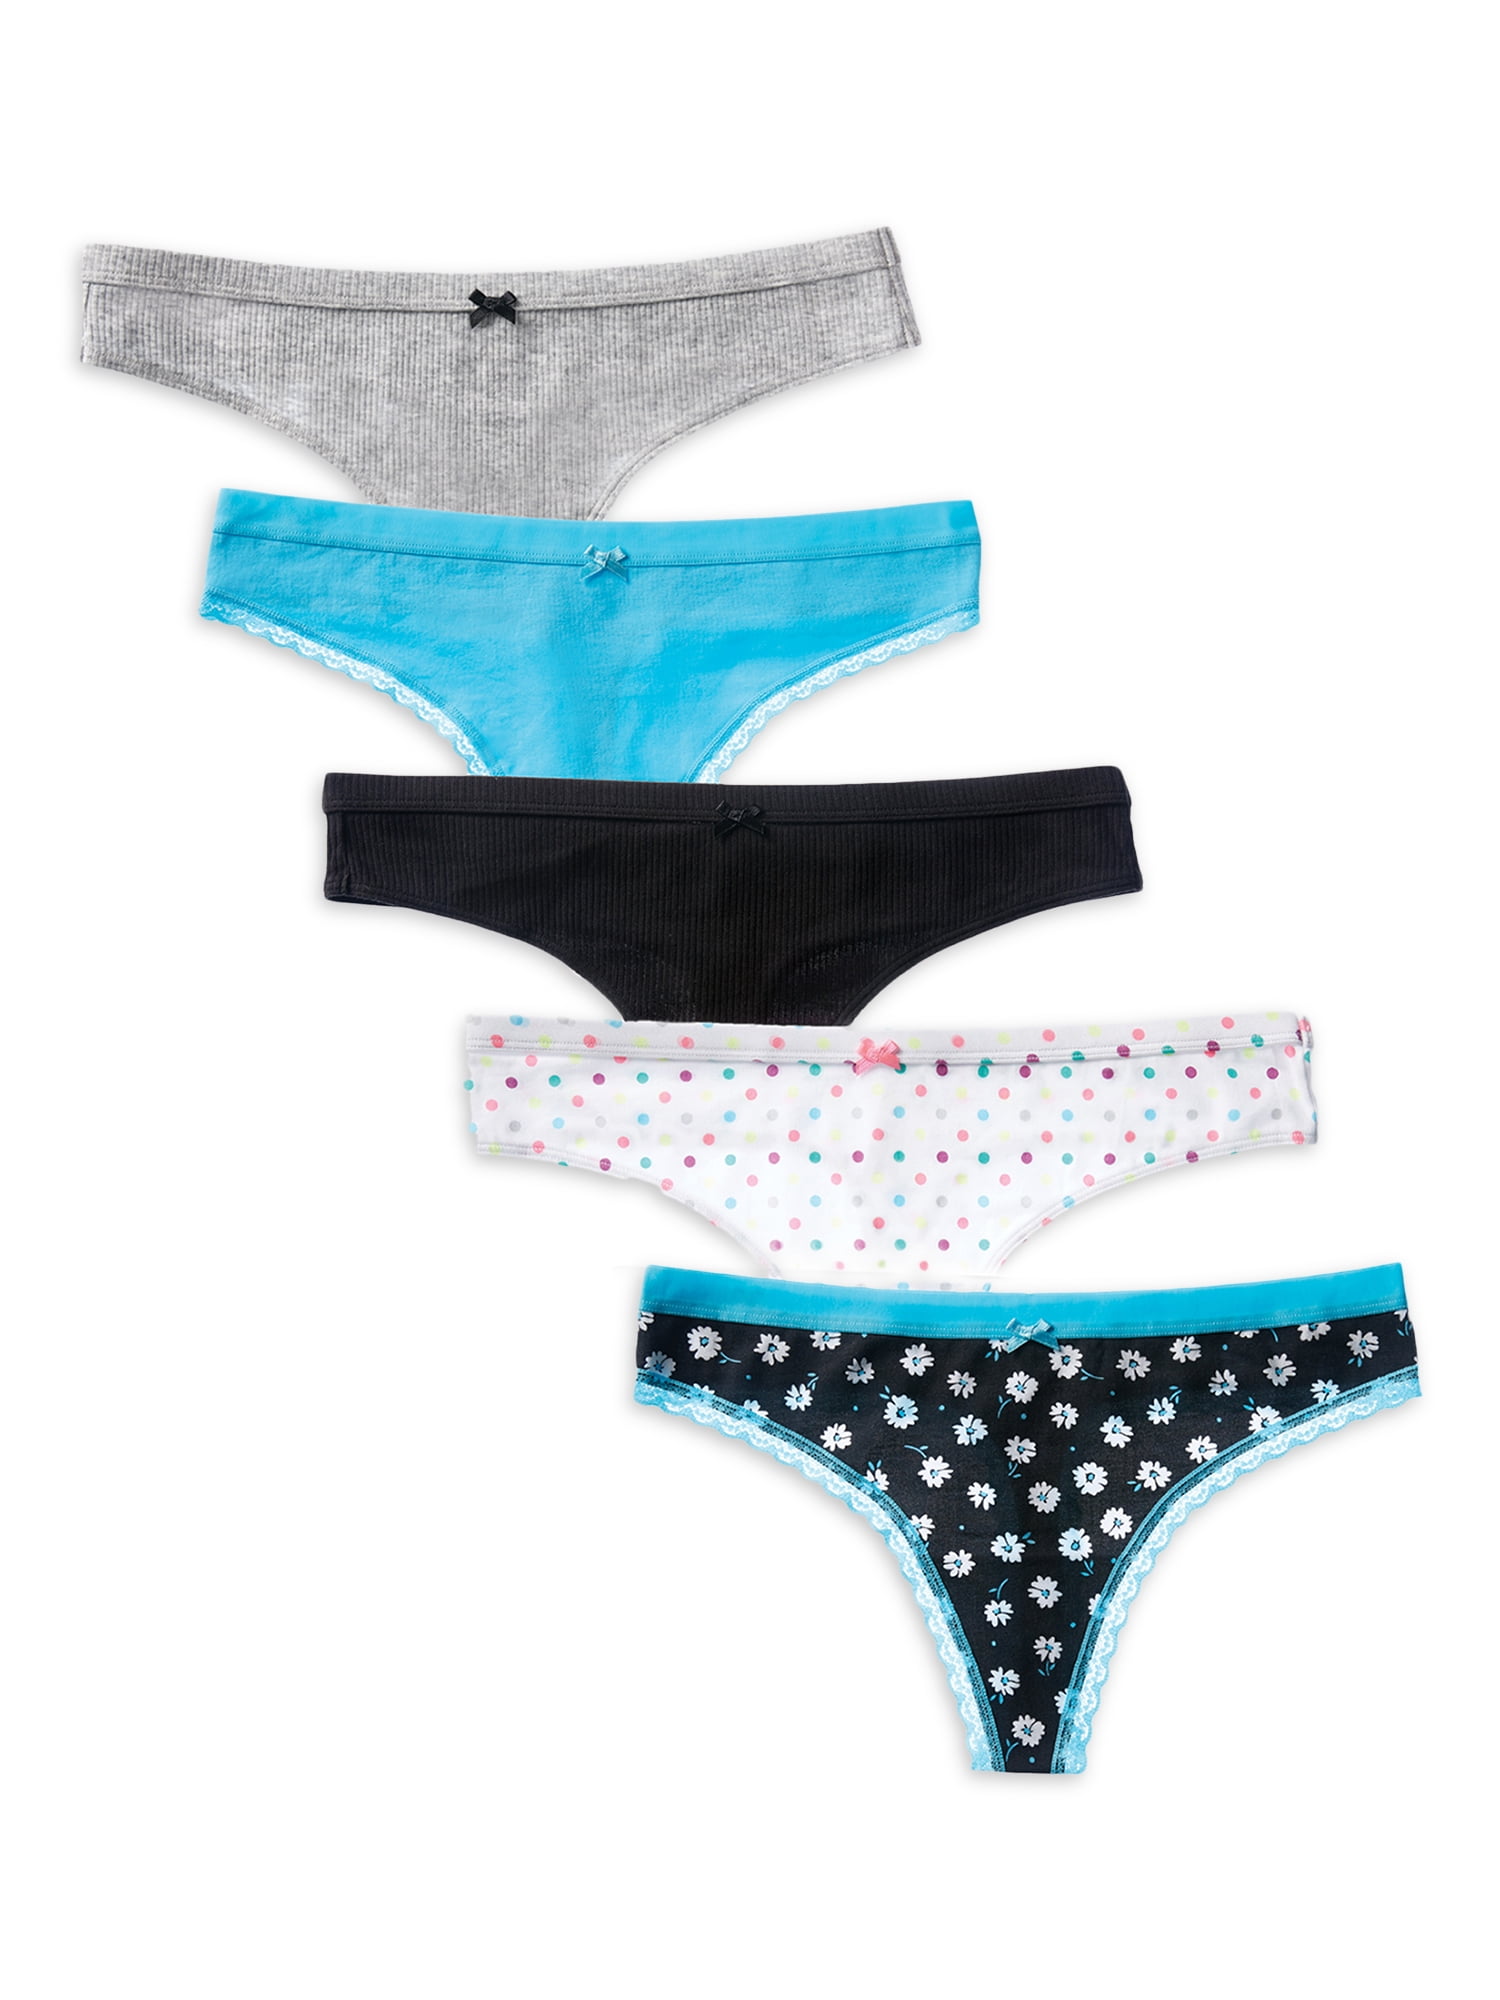 Kecooi Womens Thong Panties Underwear Assorted 3 Pack